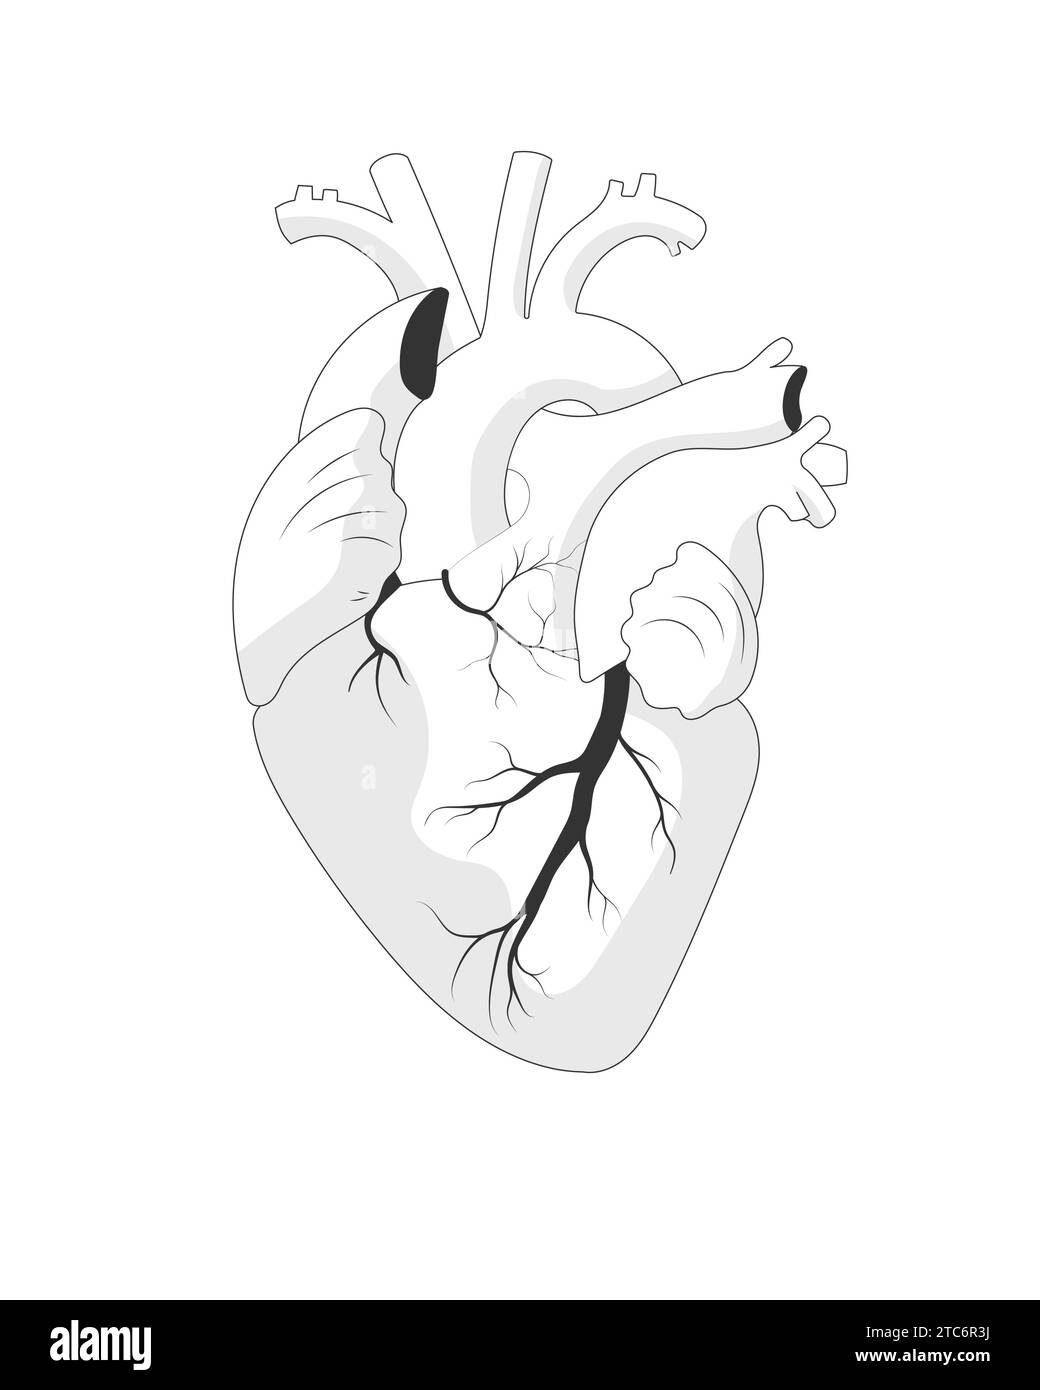 Anatomische, isolierte Abbildung des Herzens, Schwarzweißskizze. Menschliches realistisches internes Organ auf weißem Hintergrund. Stock Vektor